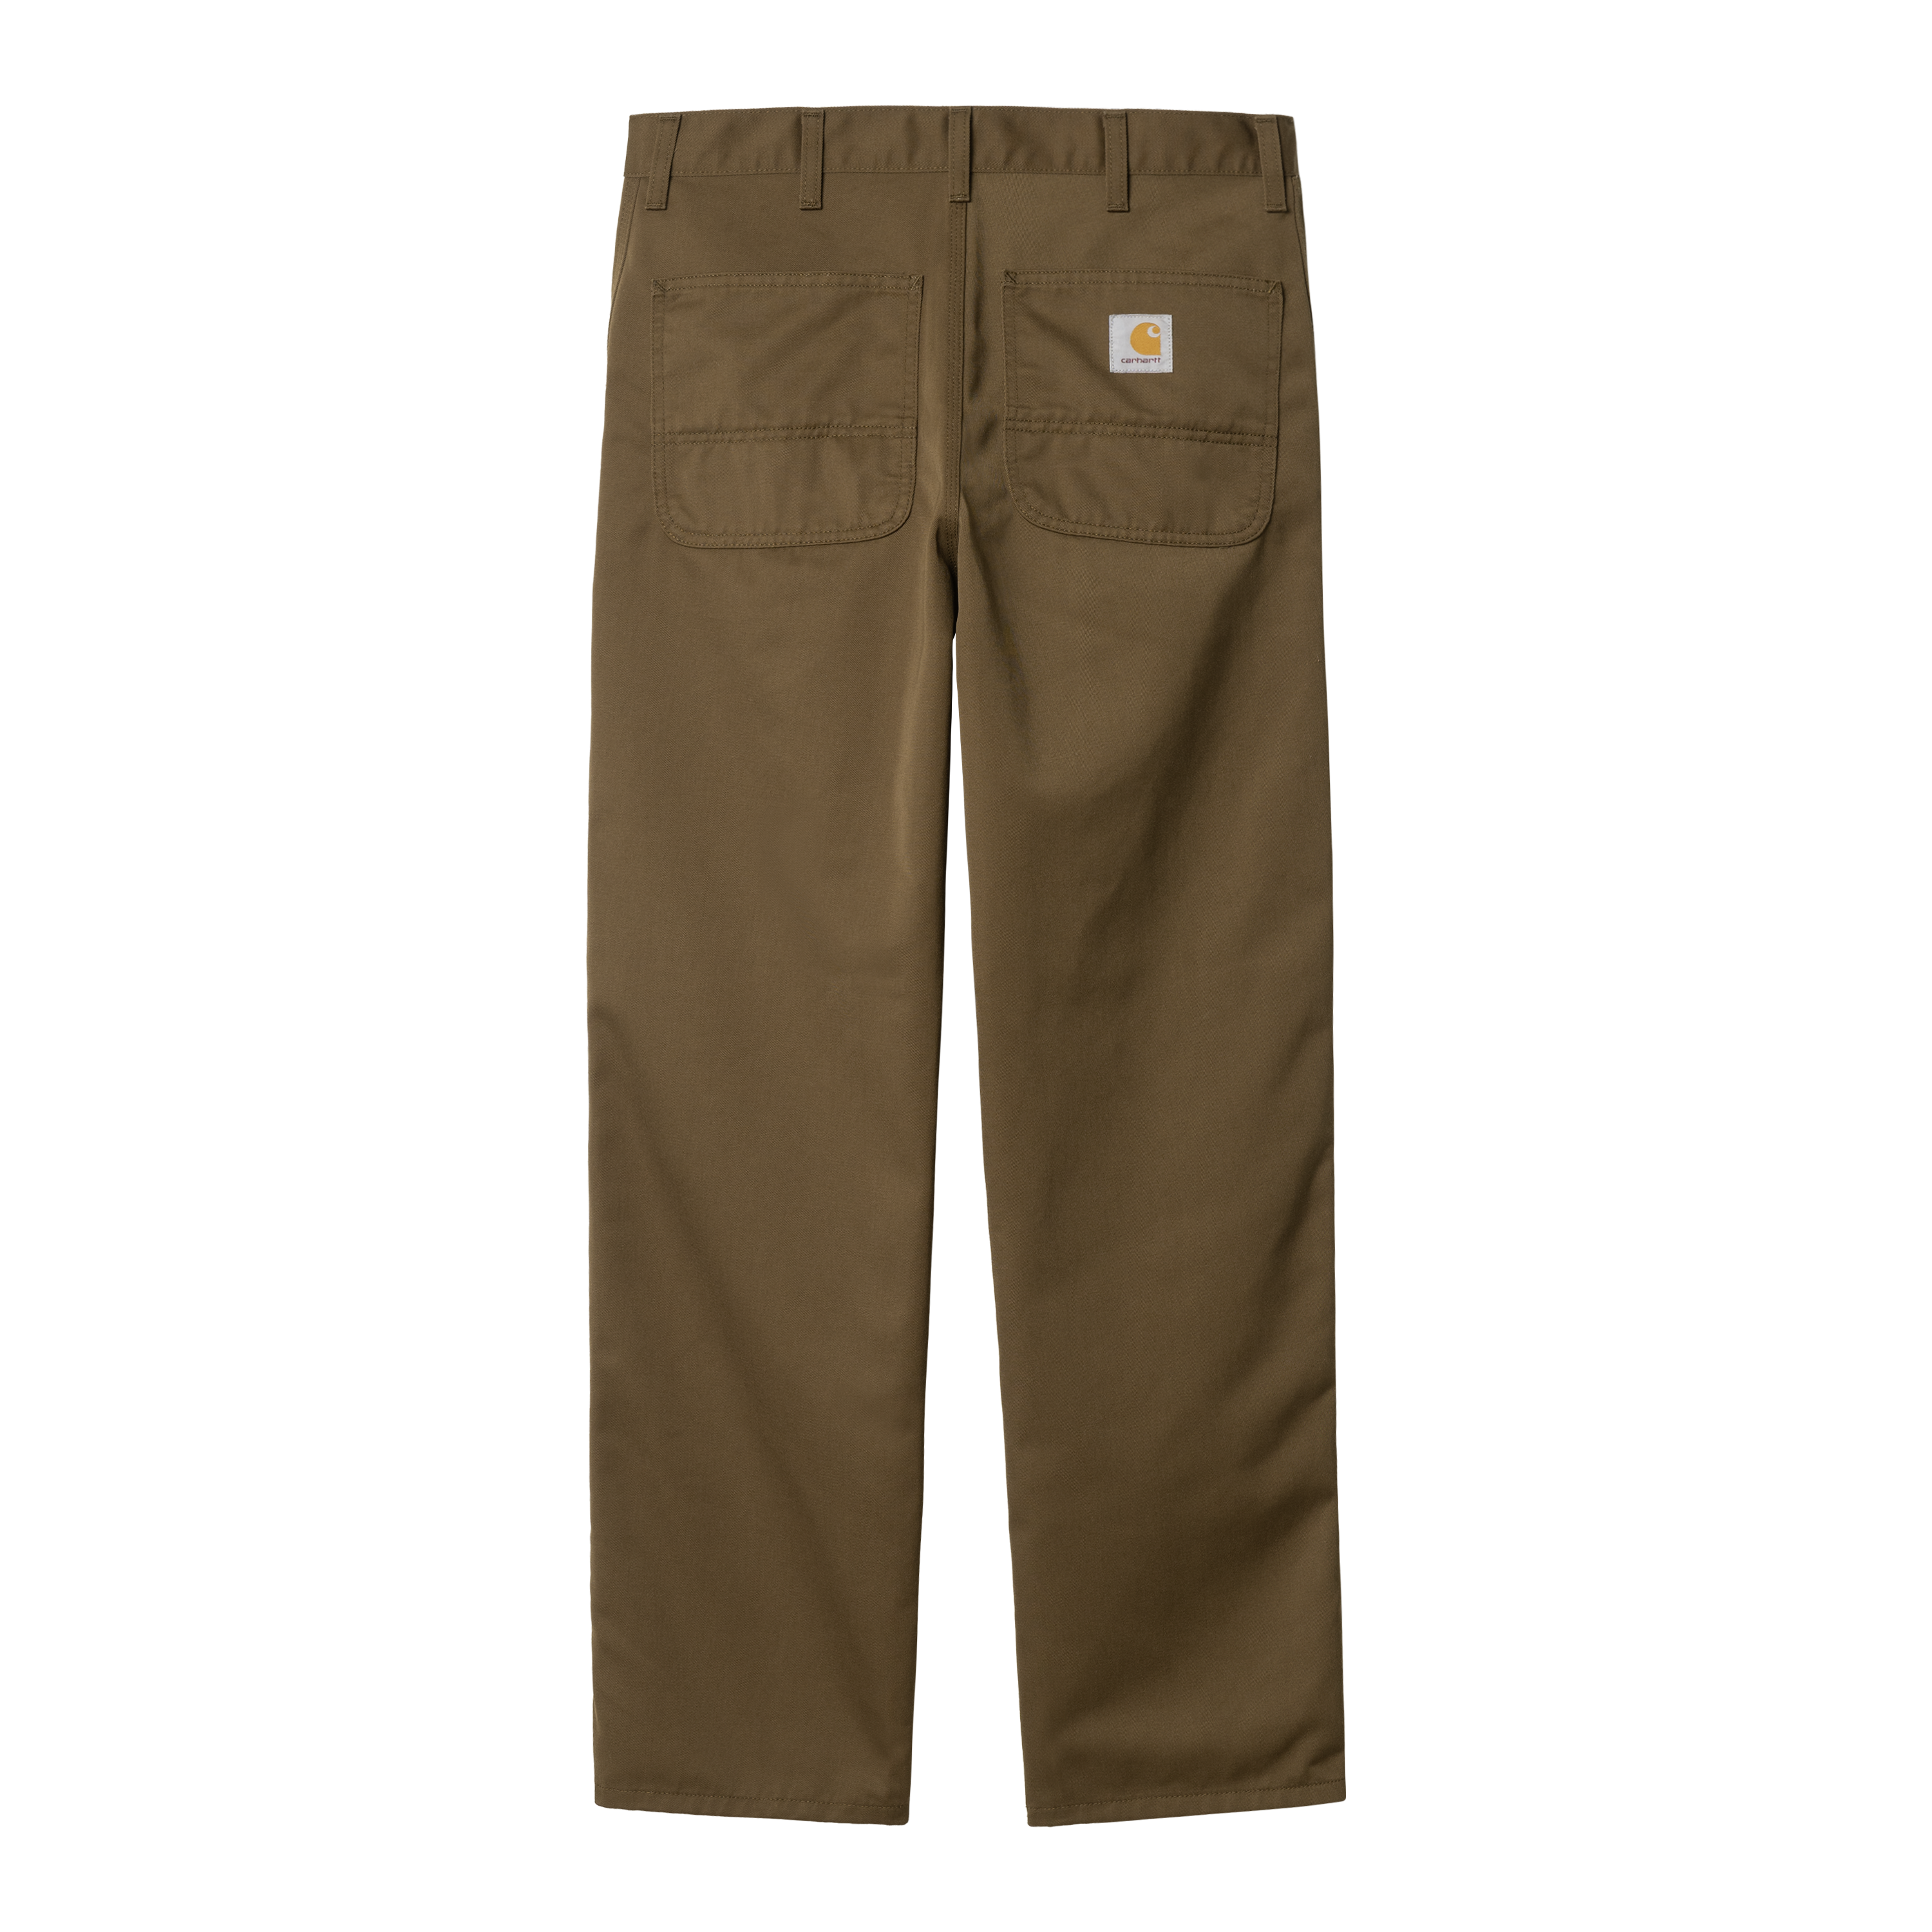 Carhartt WIP Simple Pant in Brown